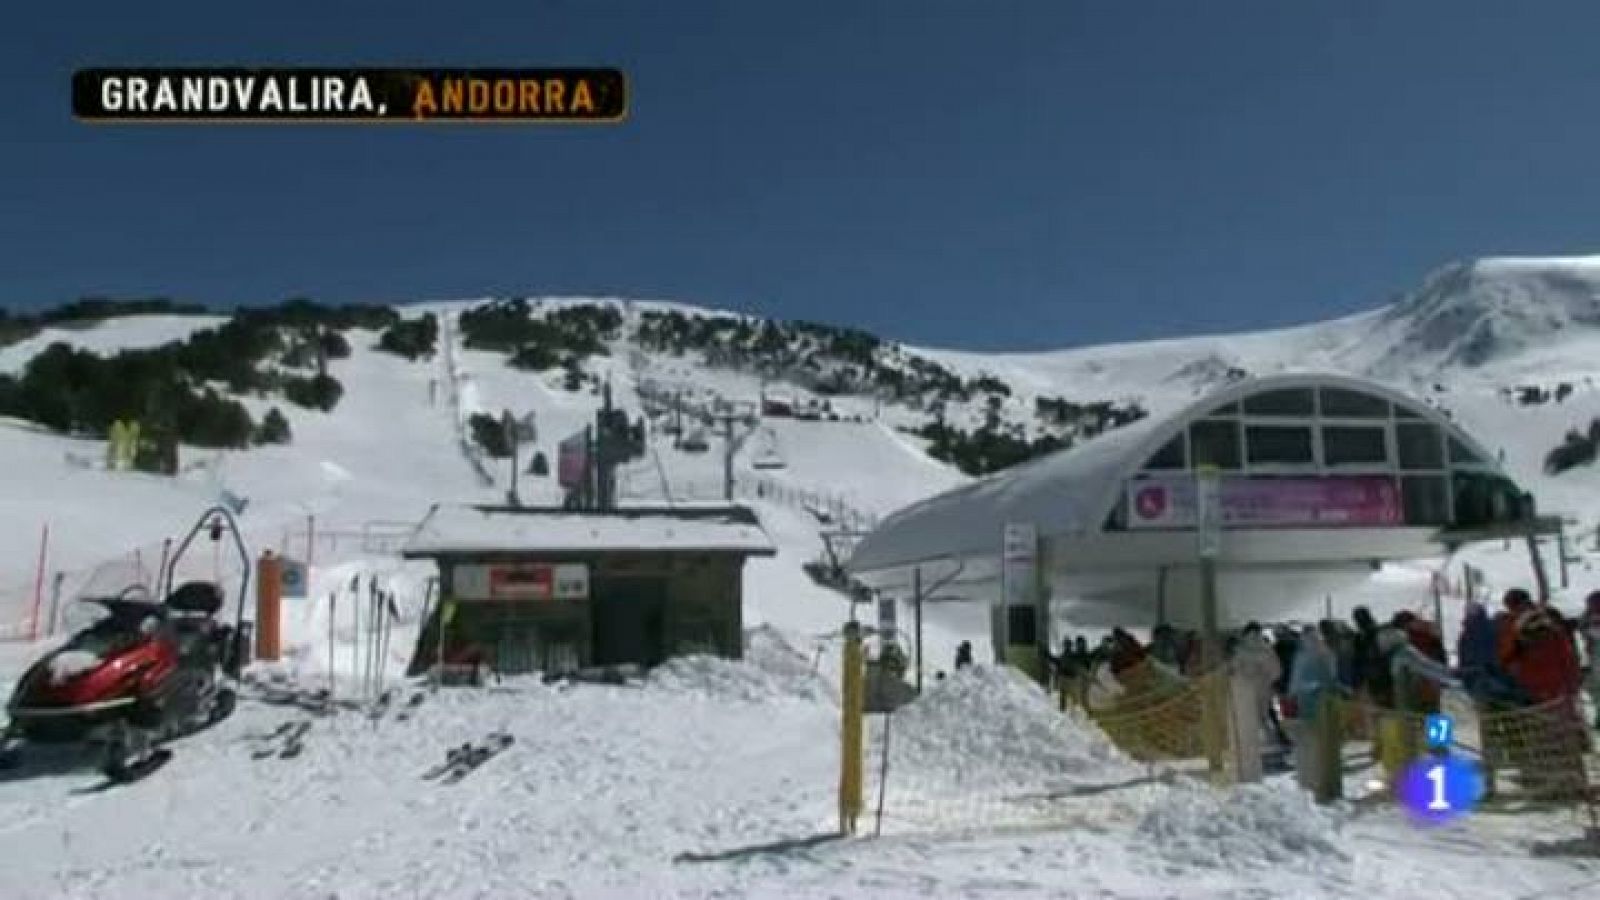 Comando actualidad - Emergencia - Servicios de emergencias de montaña en Andorra